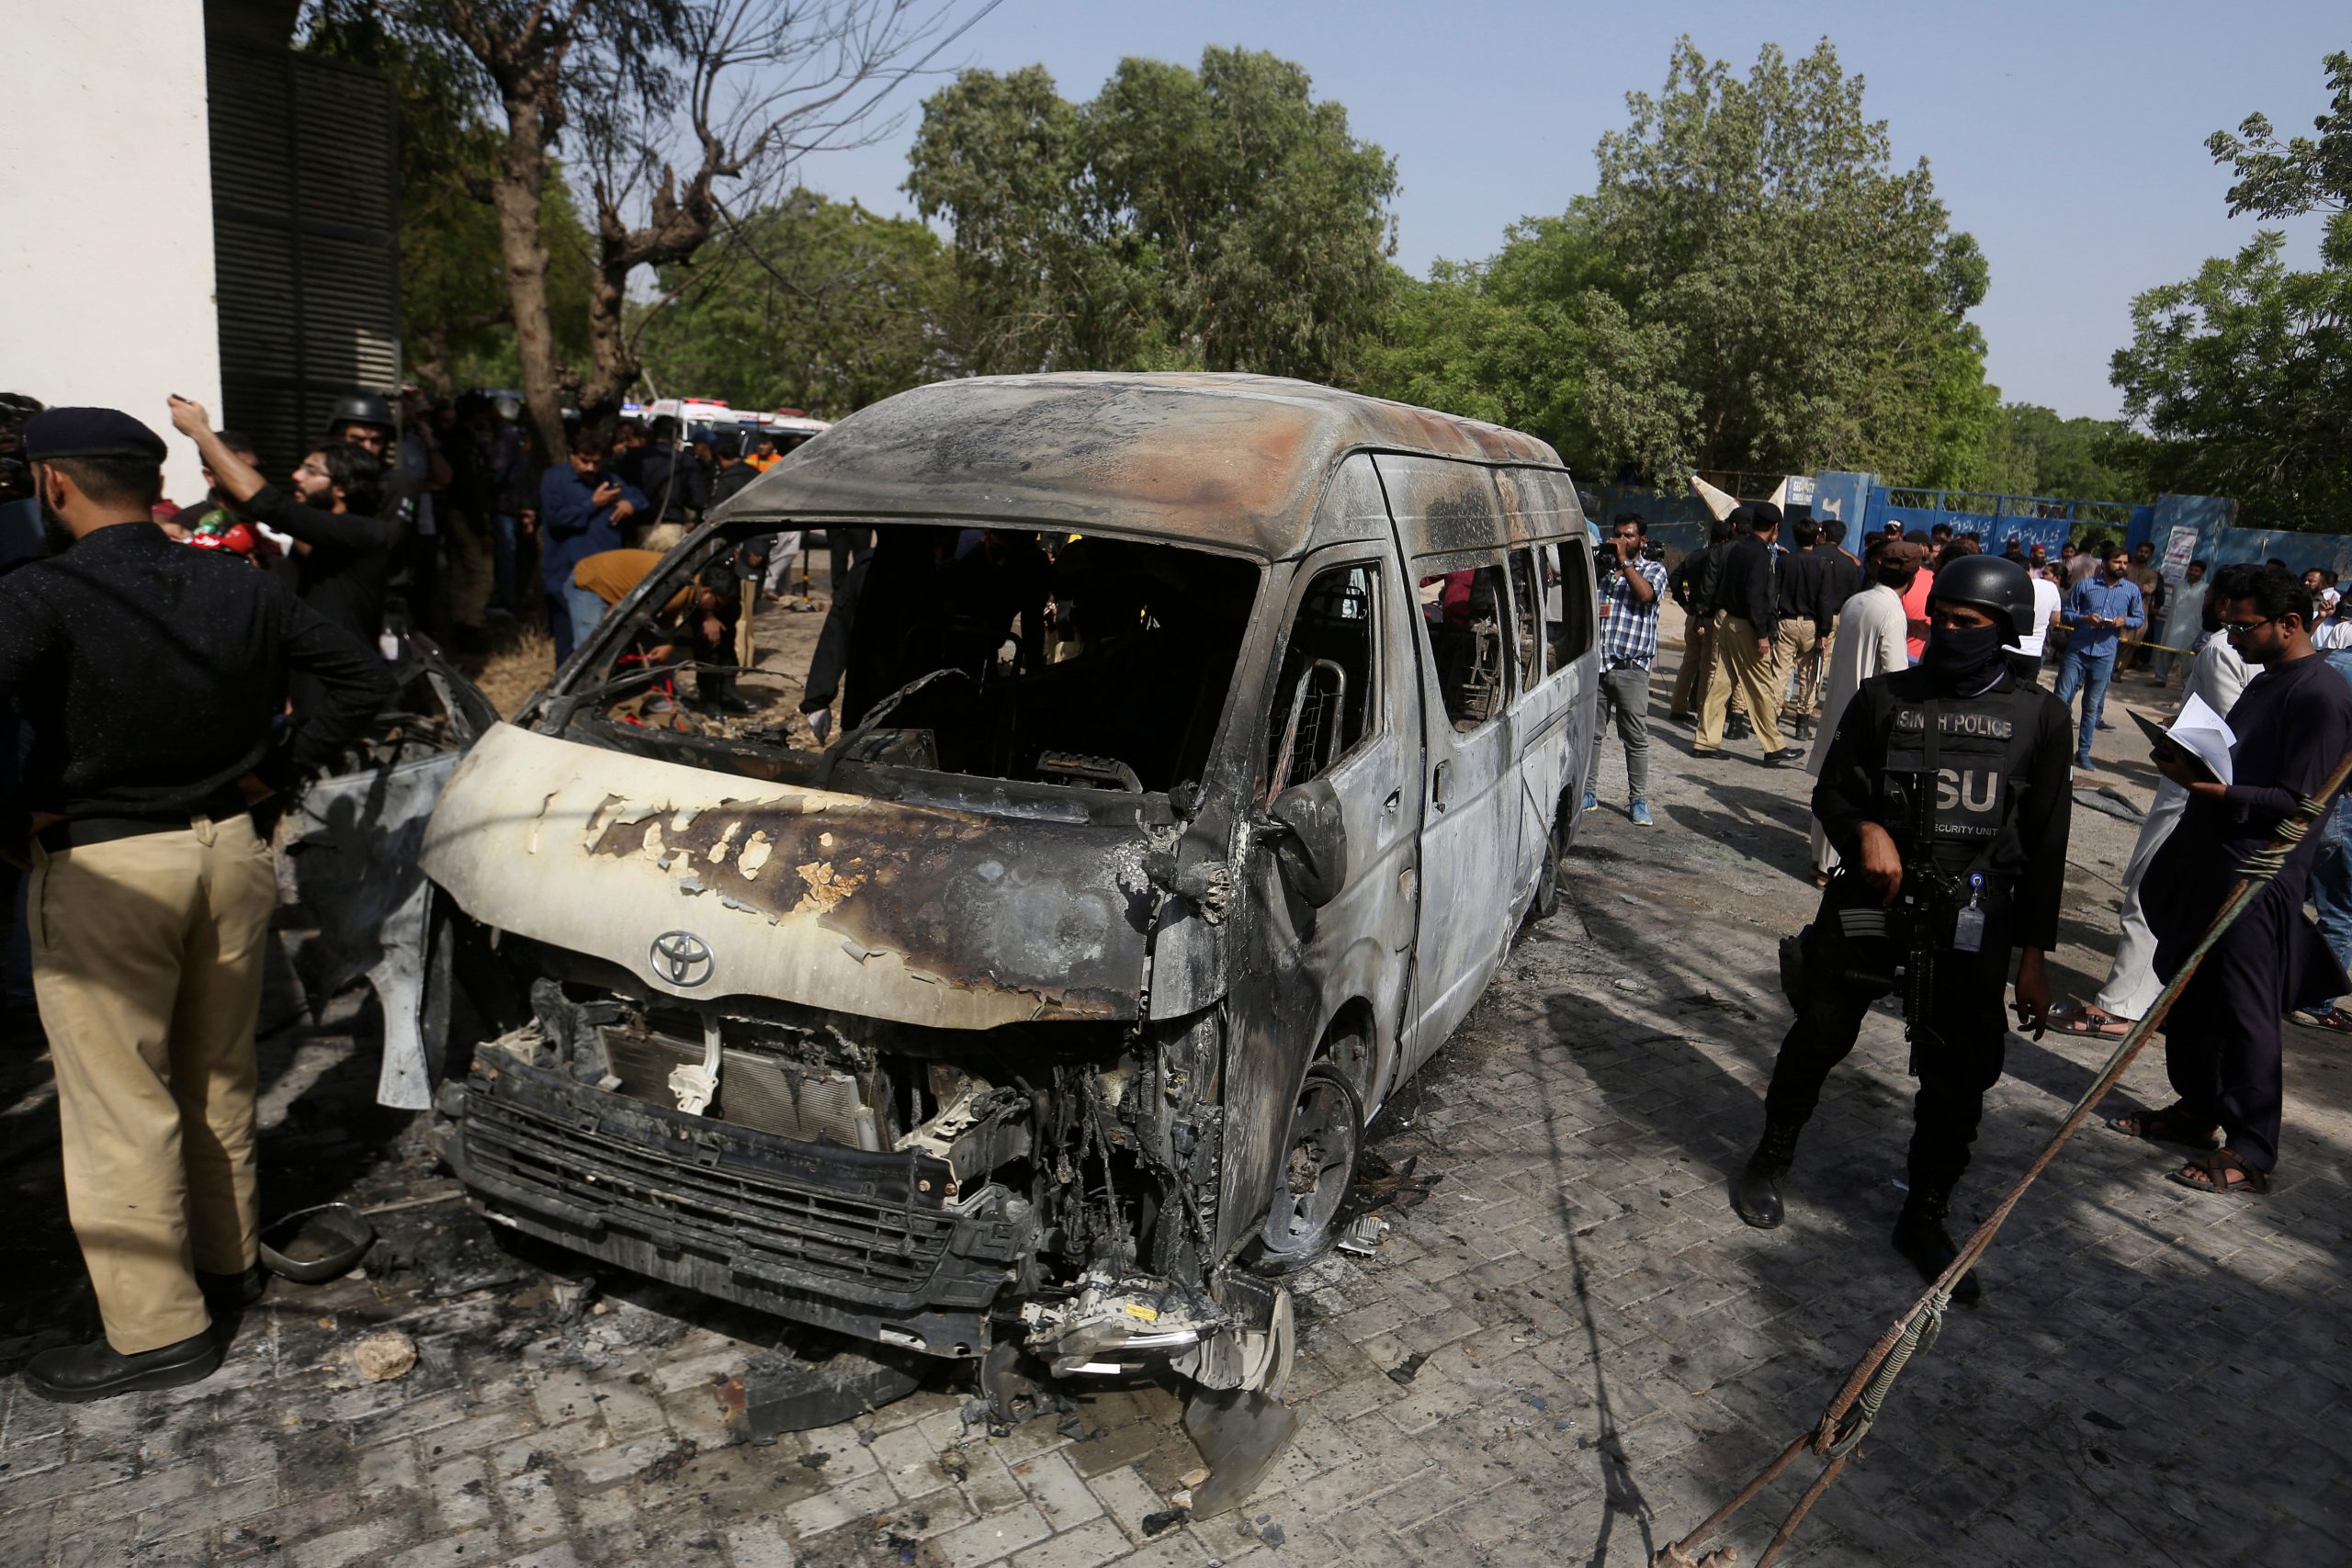 Karachi University blast, suspected to be suicide bombing, kills 5